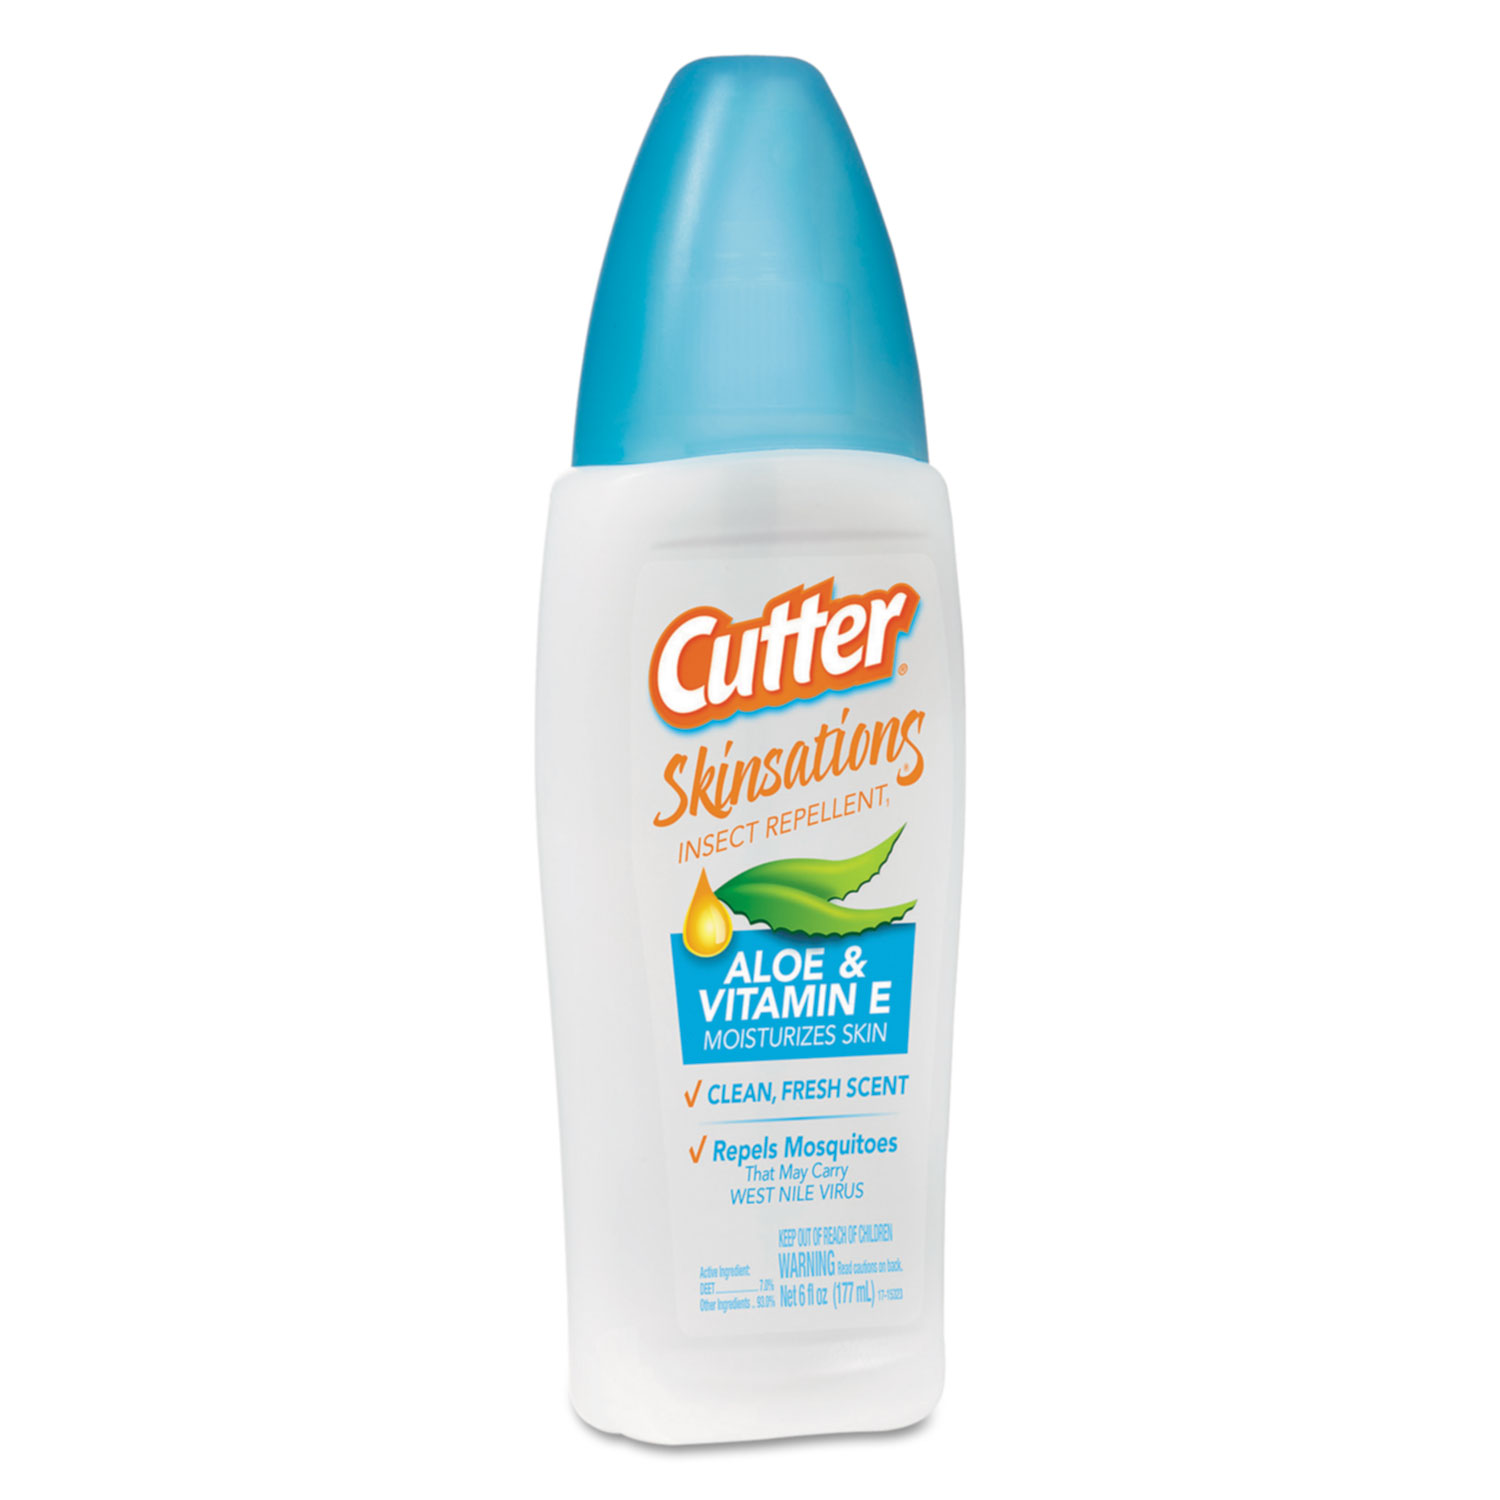  Diversey CB540103 Cutter Skinsations Insect Repellent Liquid, 6 fl.oz Pump Spray, 12/CT (DVOCB540103) 